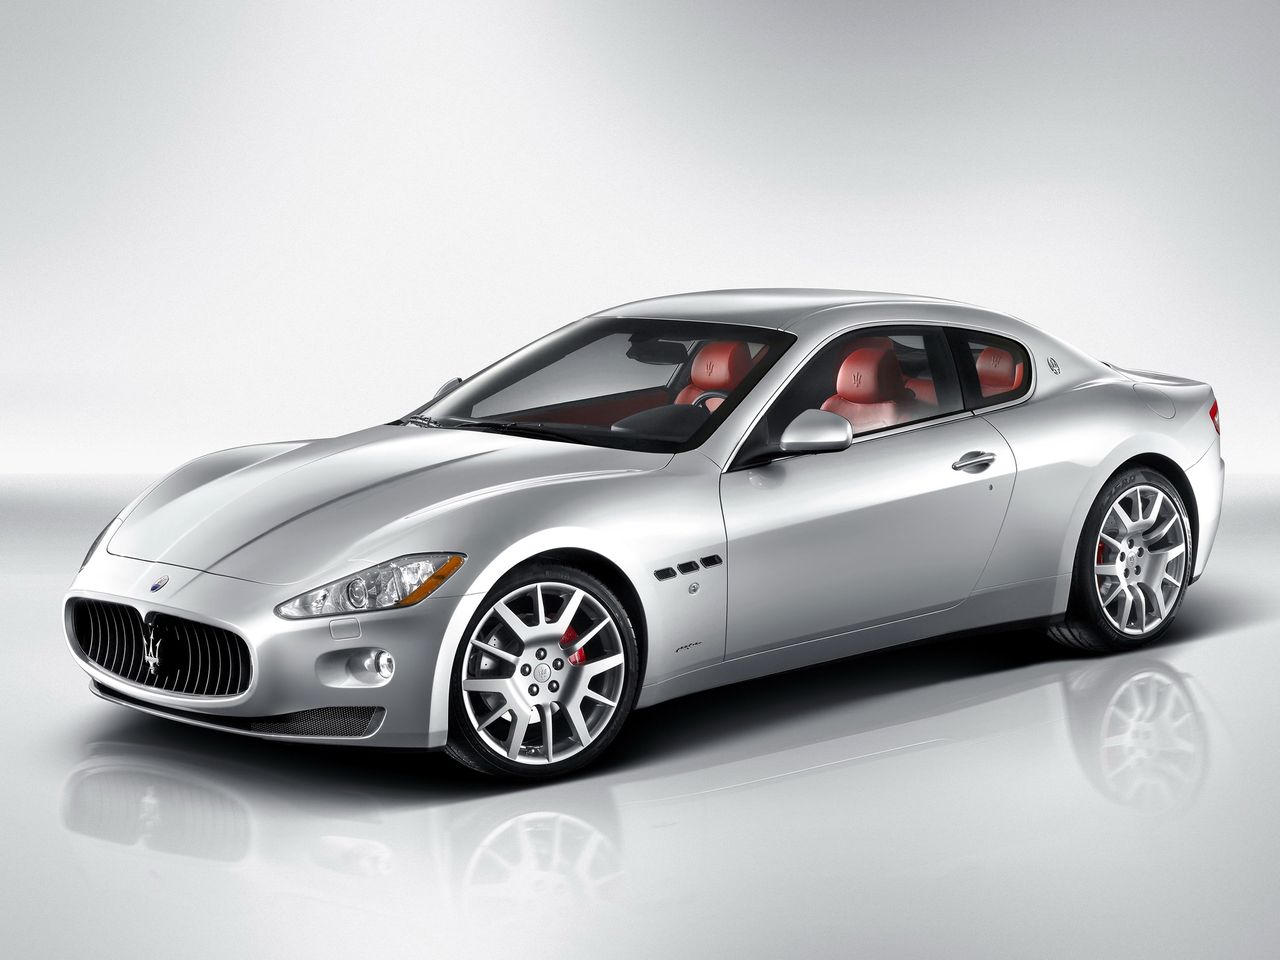 Maserati GranTurismo w podstawowej wersji potrzebuje 5,1 s, by rozpędzić się do 100 km/h. Prędkość maksymalna tej maszyny wynosi 285 km/h.